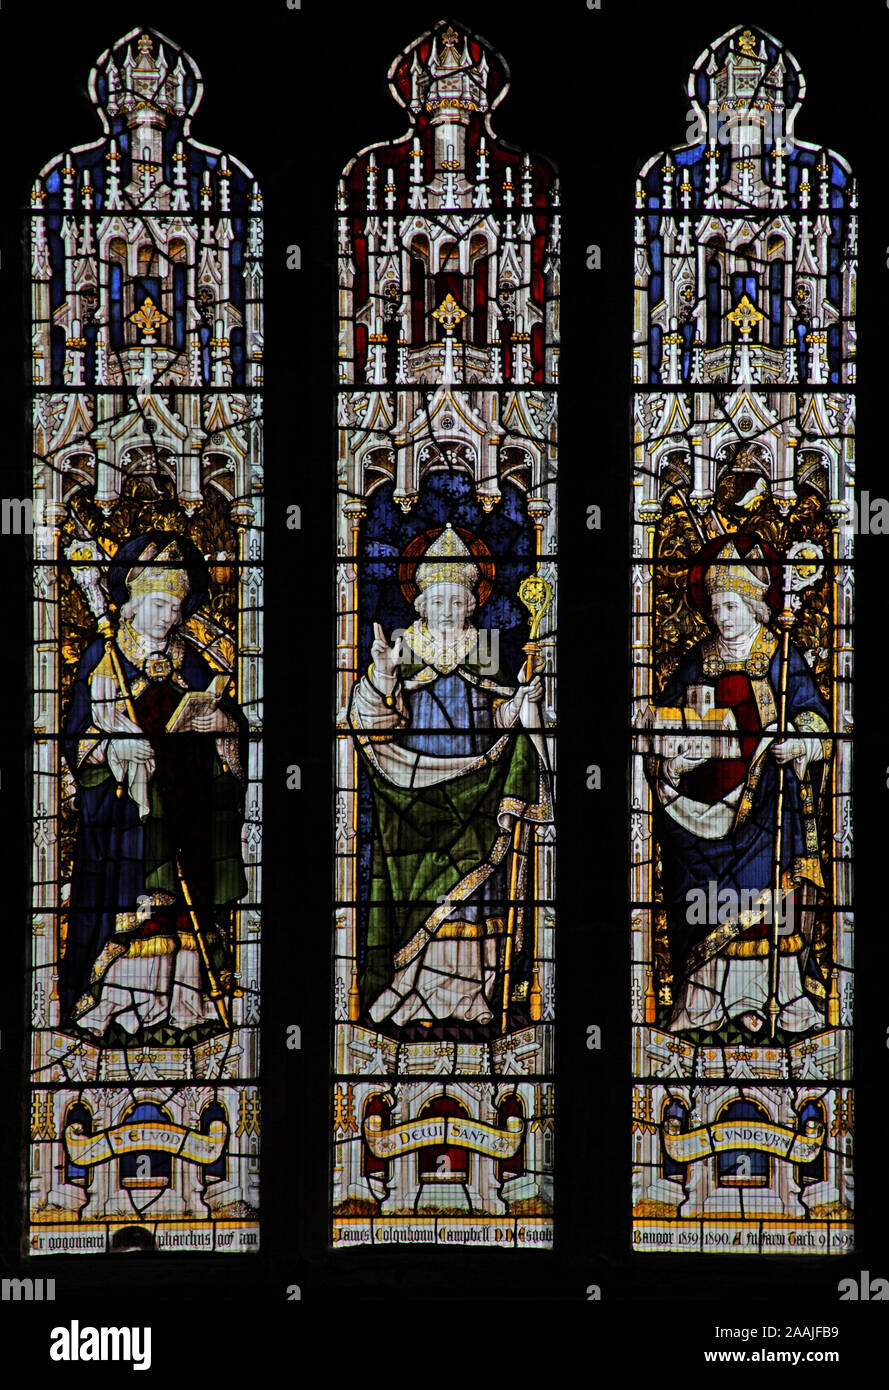 A stained glass window by Burlison & Grylls depicting Saints Elbod, David and Cyndeyrn, Bangor Cathedral, Bangor, Gwynedd, Wales Stock Photo